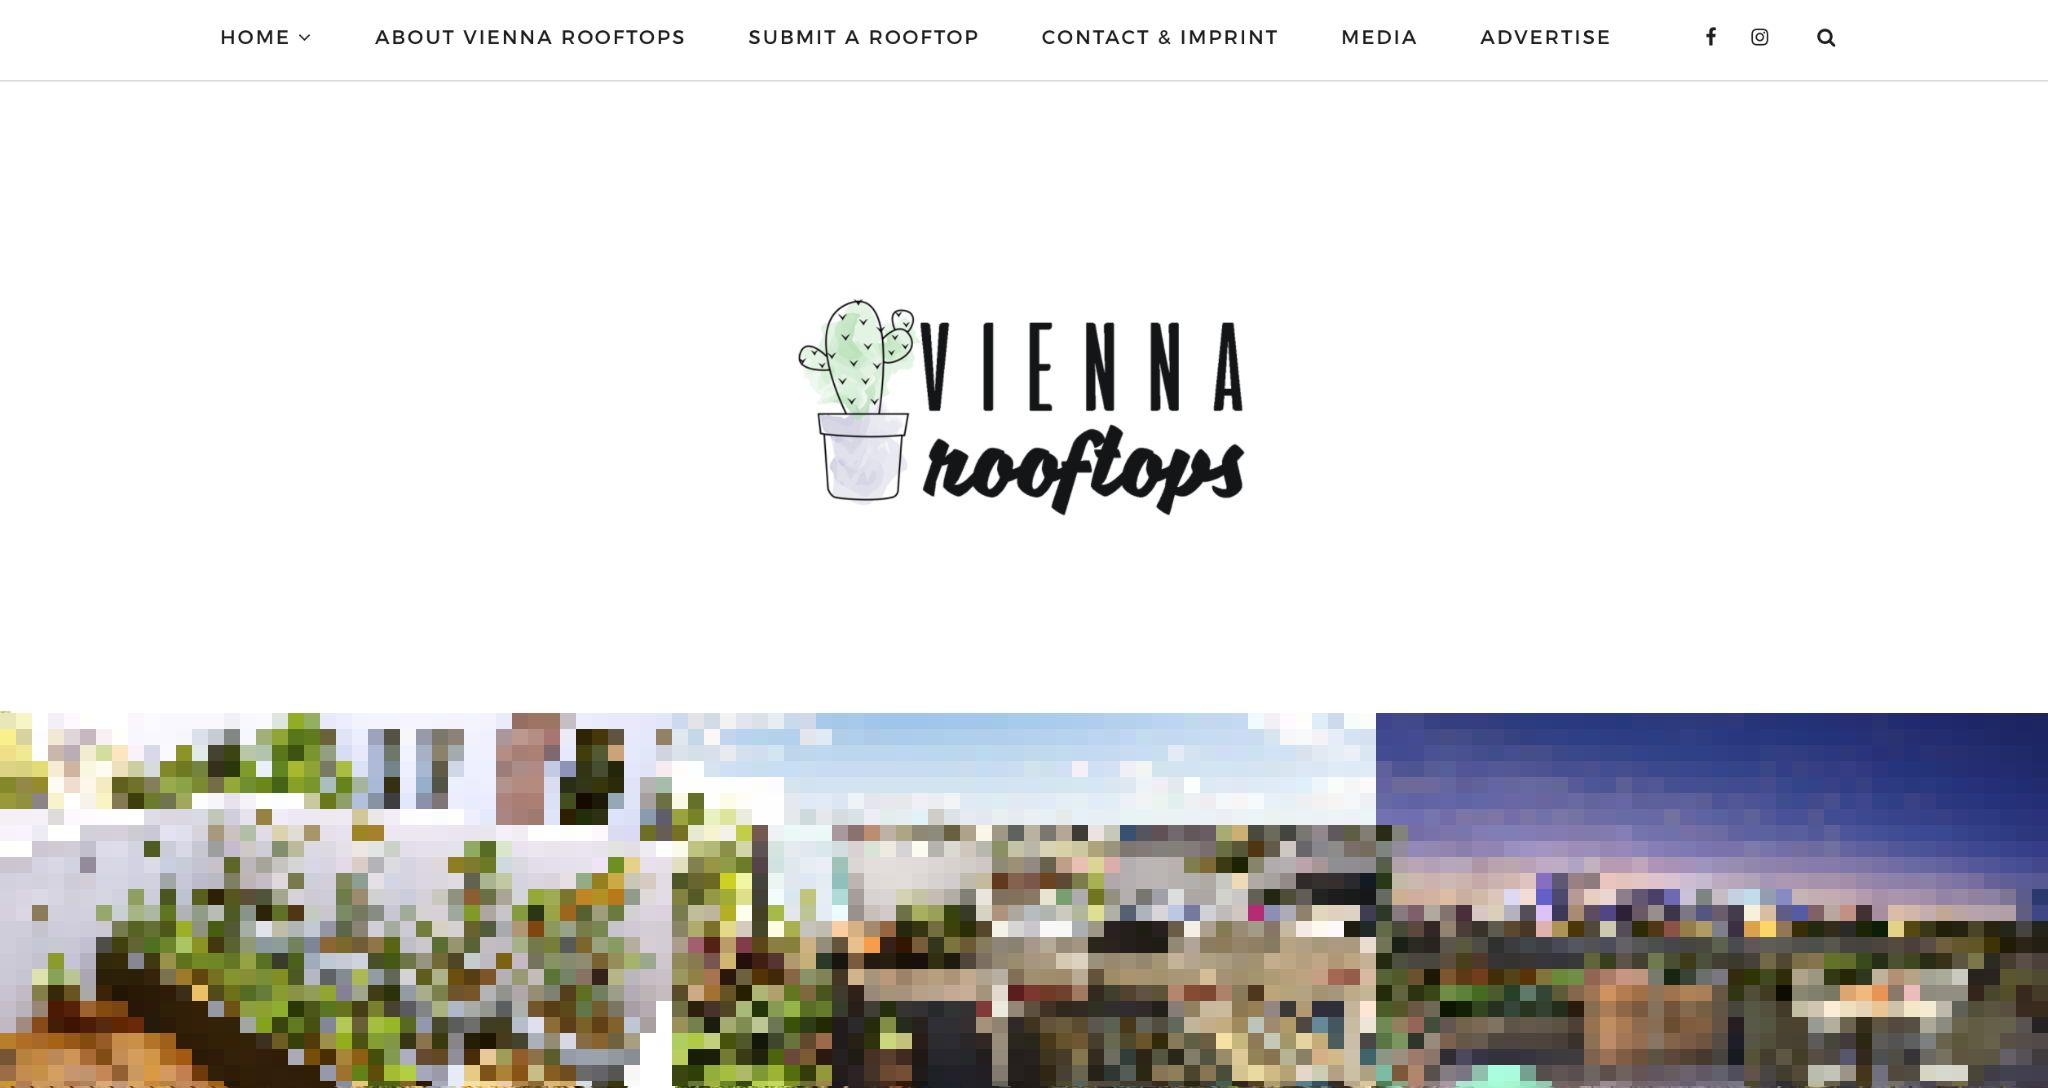 ViennaRooftops_pixelated